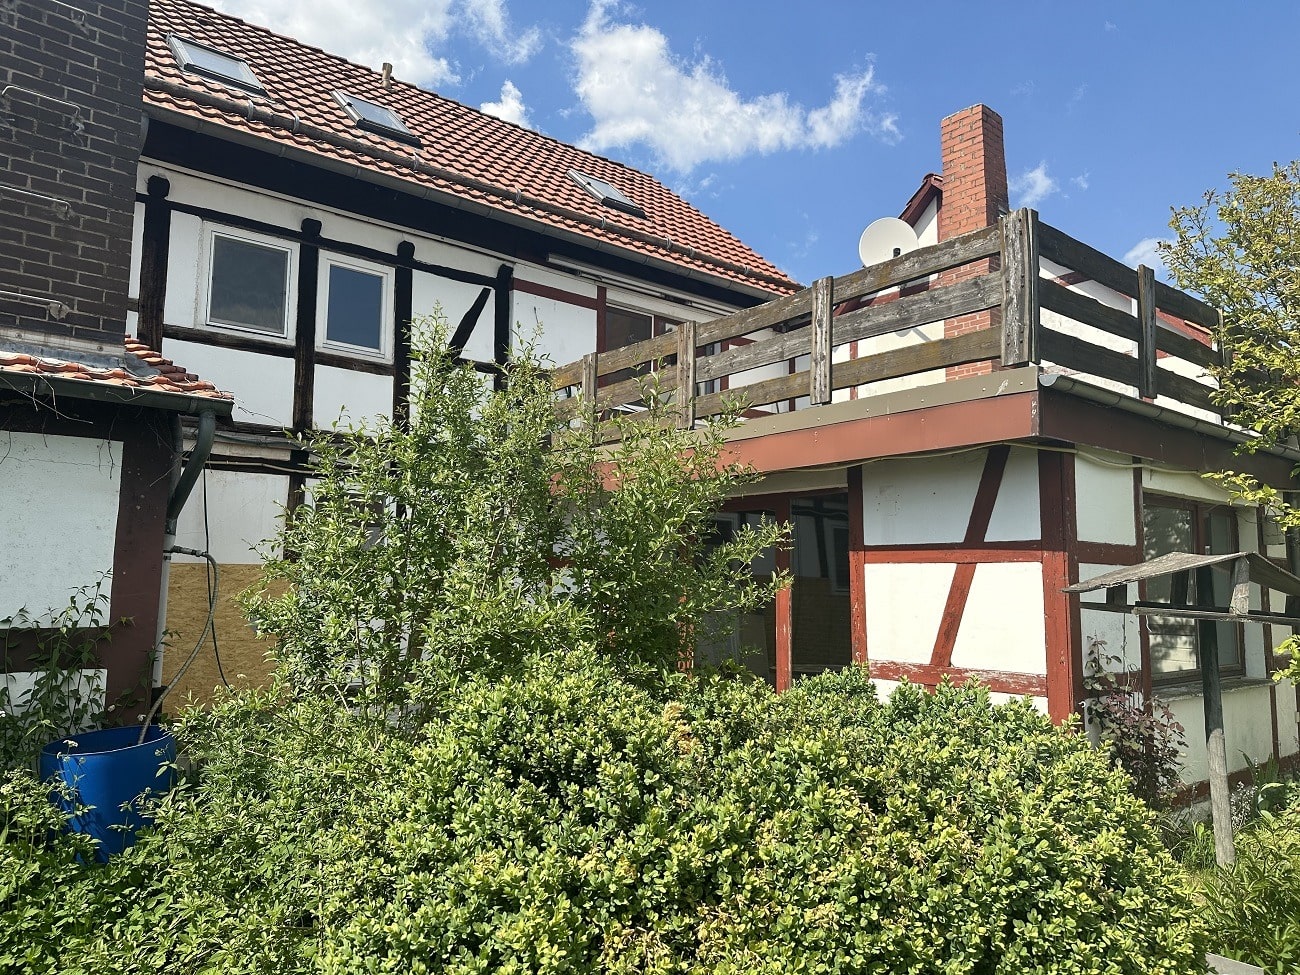 Sibbesse-Adenstedt: Großzügige Doppelhaushälfte mit Sauna, Balkon und Garage, 31079 Sibbesse, Doppelhaushälfte